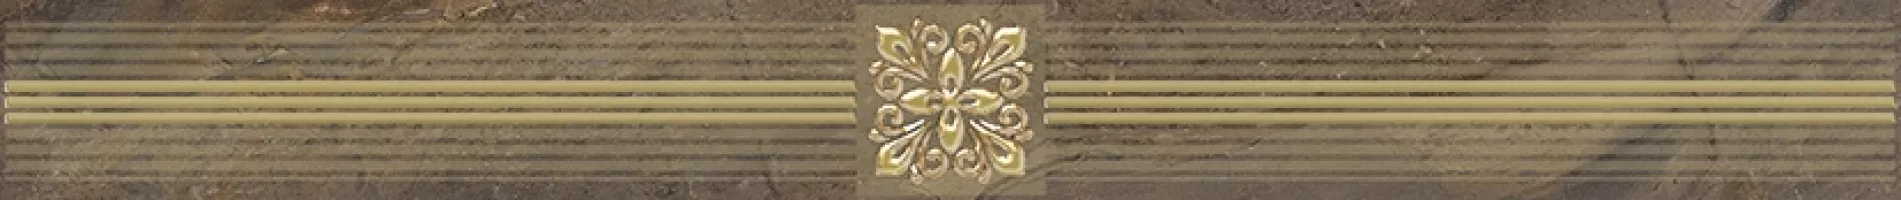 Плитка настенная Laparet 60x6 бордюр коричневый Royal глянцевая глазурованная